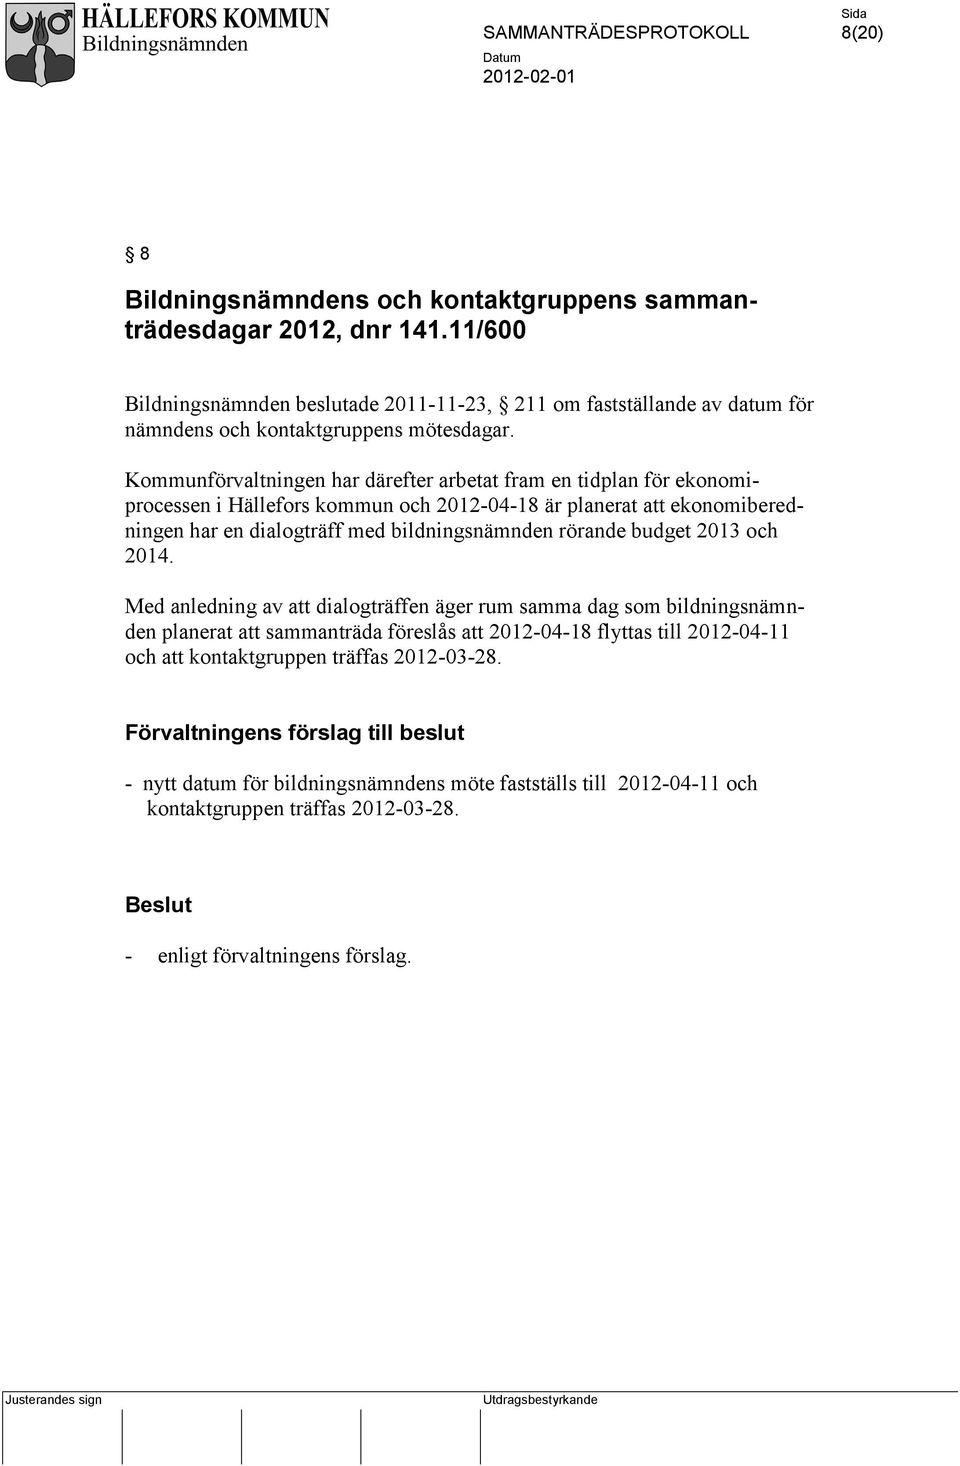 Kommunförvaltningen har därefter arbetat fram en tidplan för ekonomiprocessen i Hällefors kommun och 2012-04-18 är planerat att ekonomiberedningen har en dialogträff med bildningsnämnden